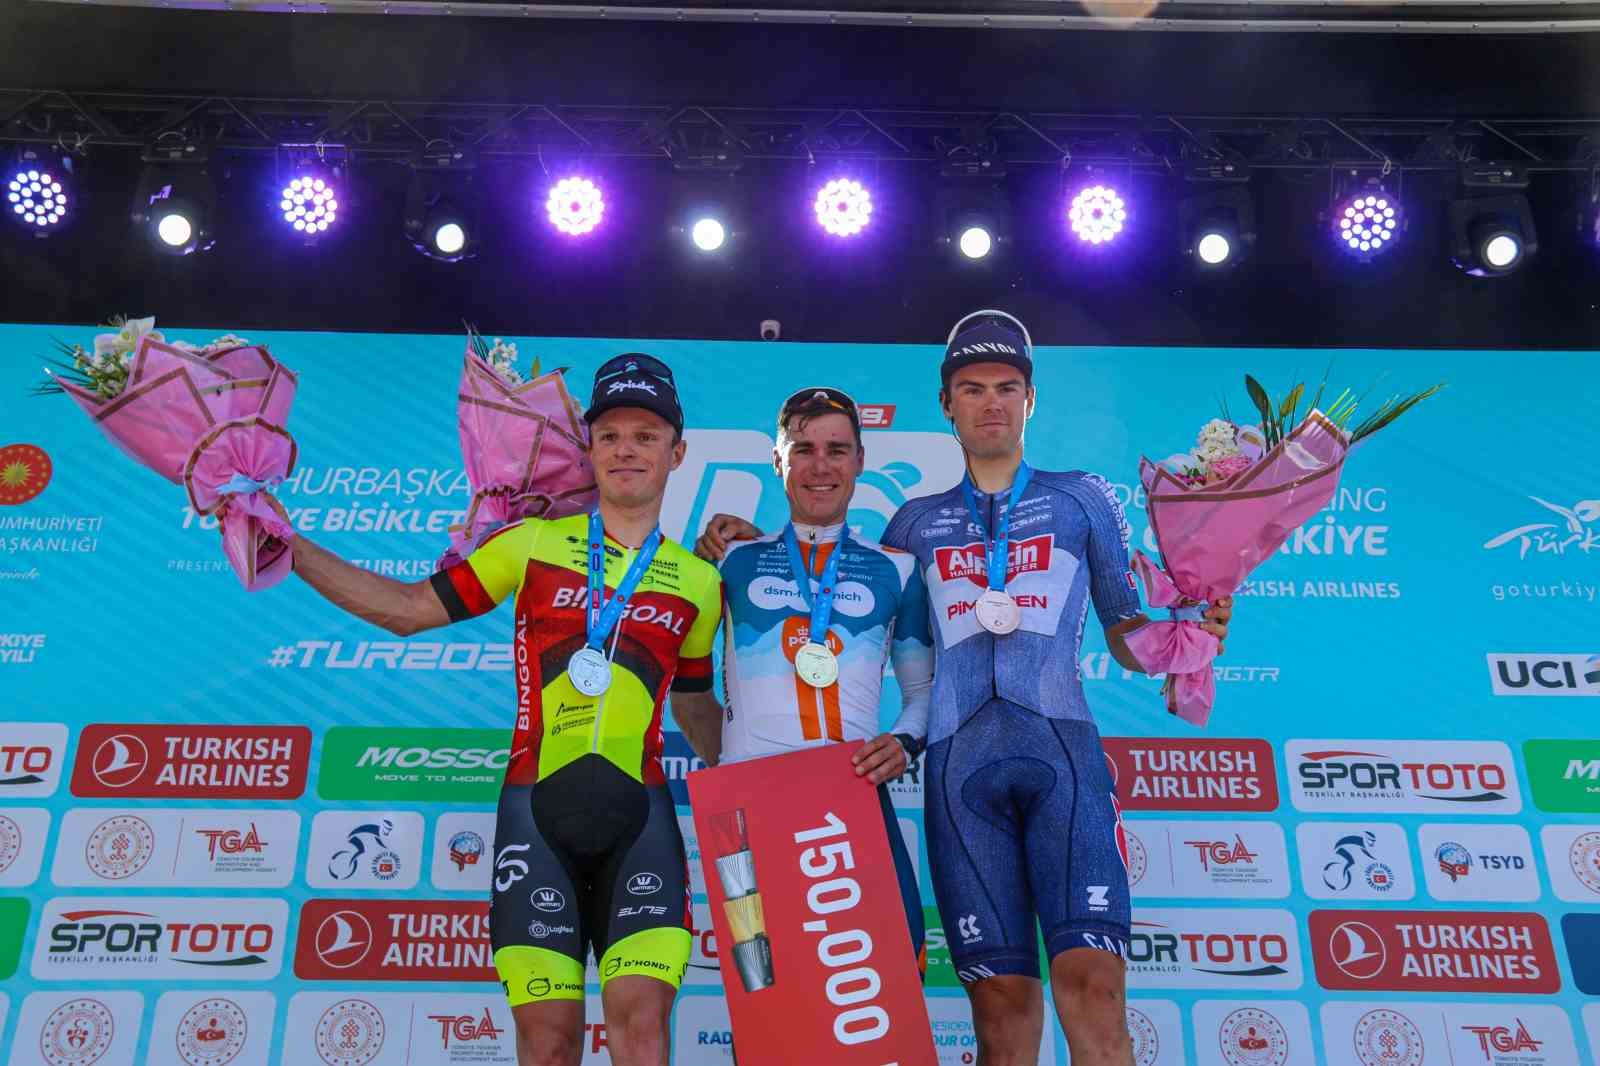 Cumhurbaşkanlığı Türkiye Bisiklet Turunun ilk etabını Fabio Jakobsen kazandı
